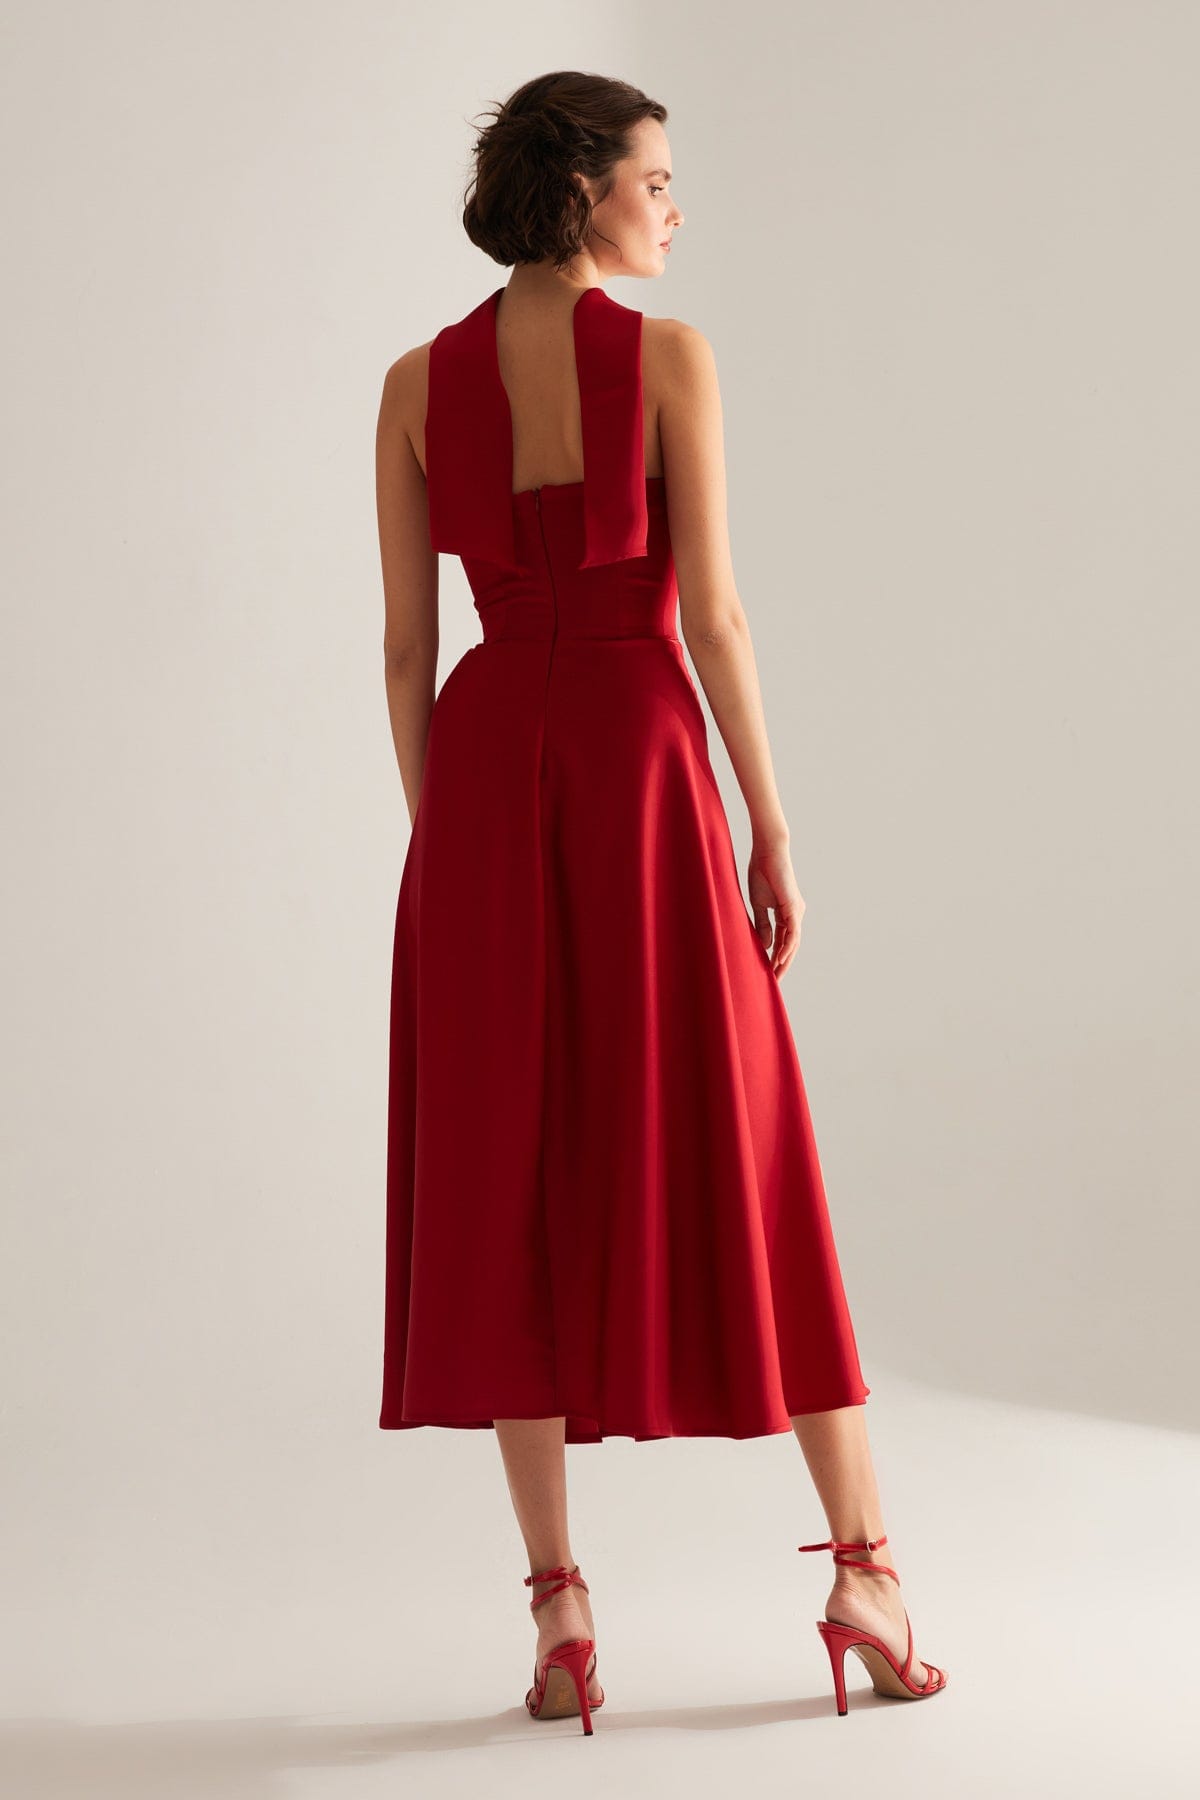 BRERA Kırmızı Saten Yırtmaçlı Şallı Straplez Elbise